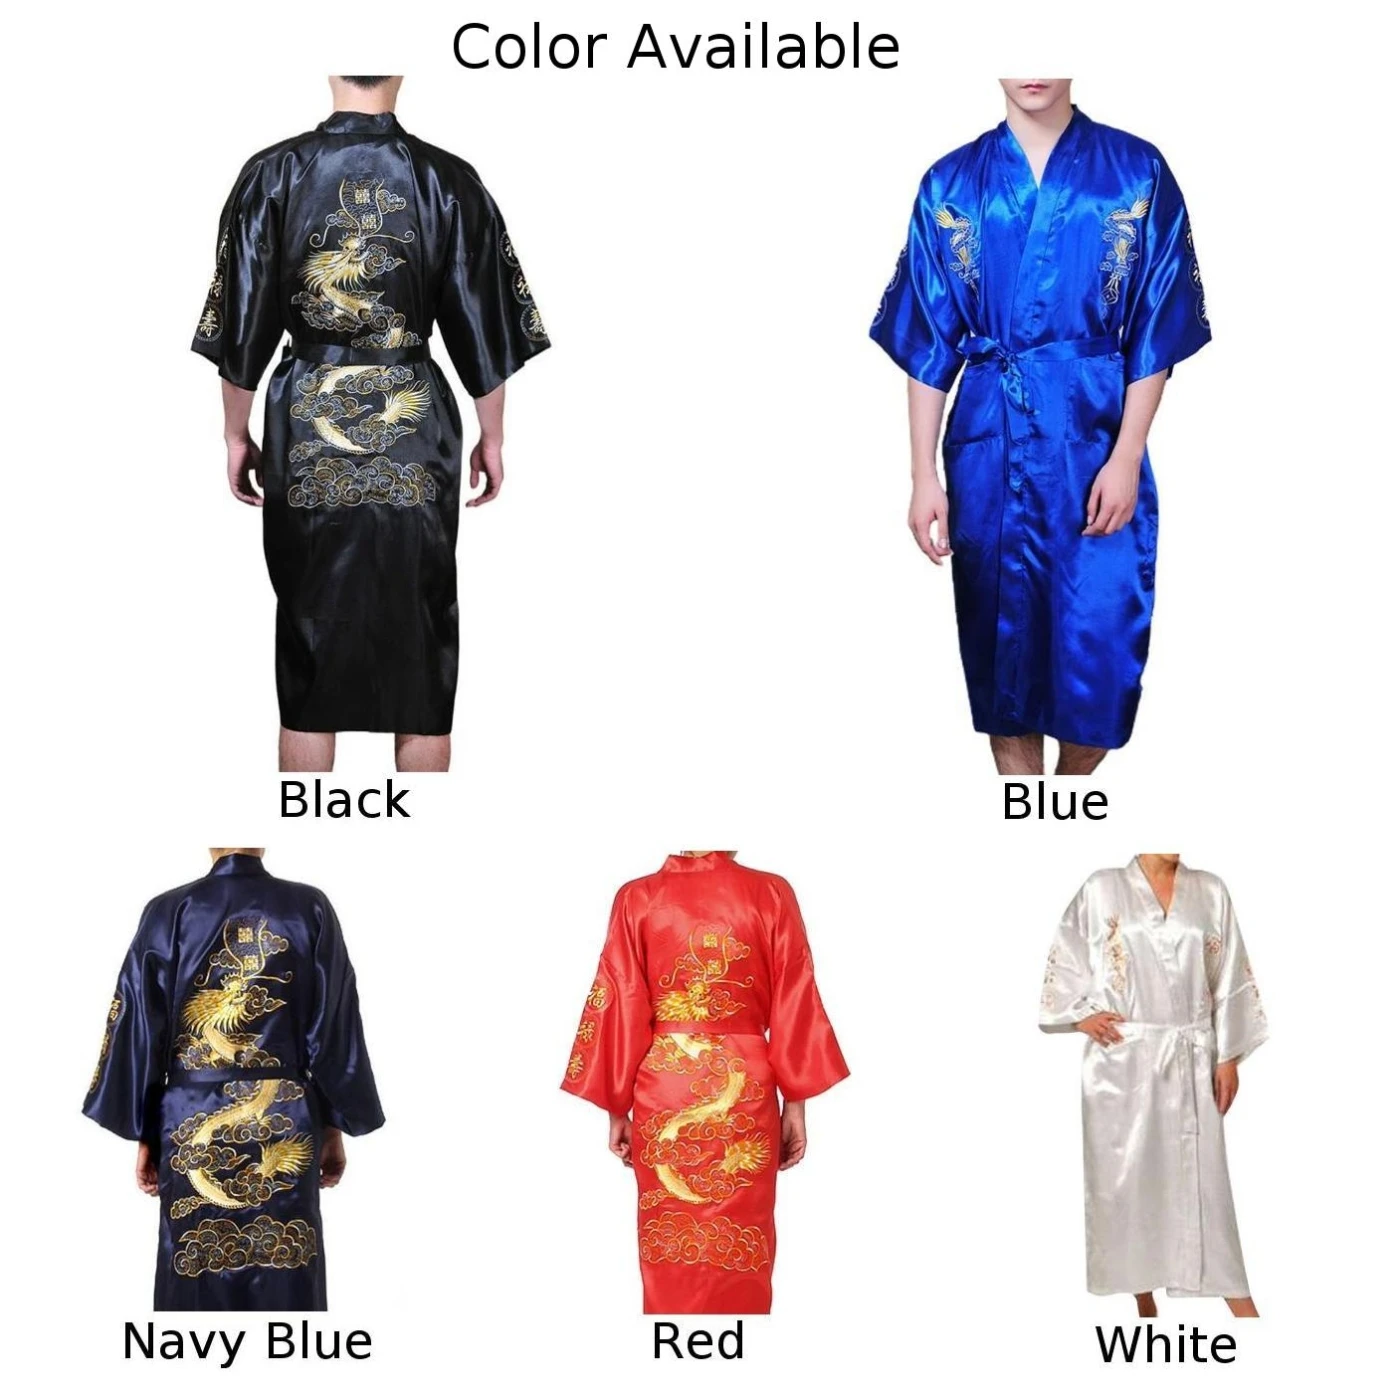 เสื้อคลุมอาบน้ำผ้าซาตินสำหรับผู้ชายสไตล์จีนดีไซน์มังกรชุดนอนผ้าไหม2XL ม. สีกรมท่า/แดง/ขาว/ดำ/น้ำเงิน